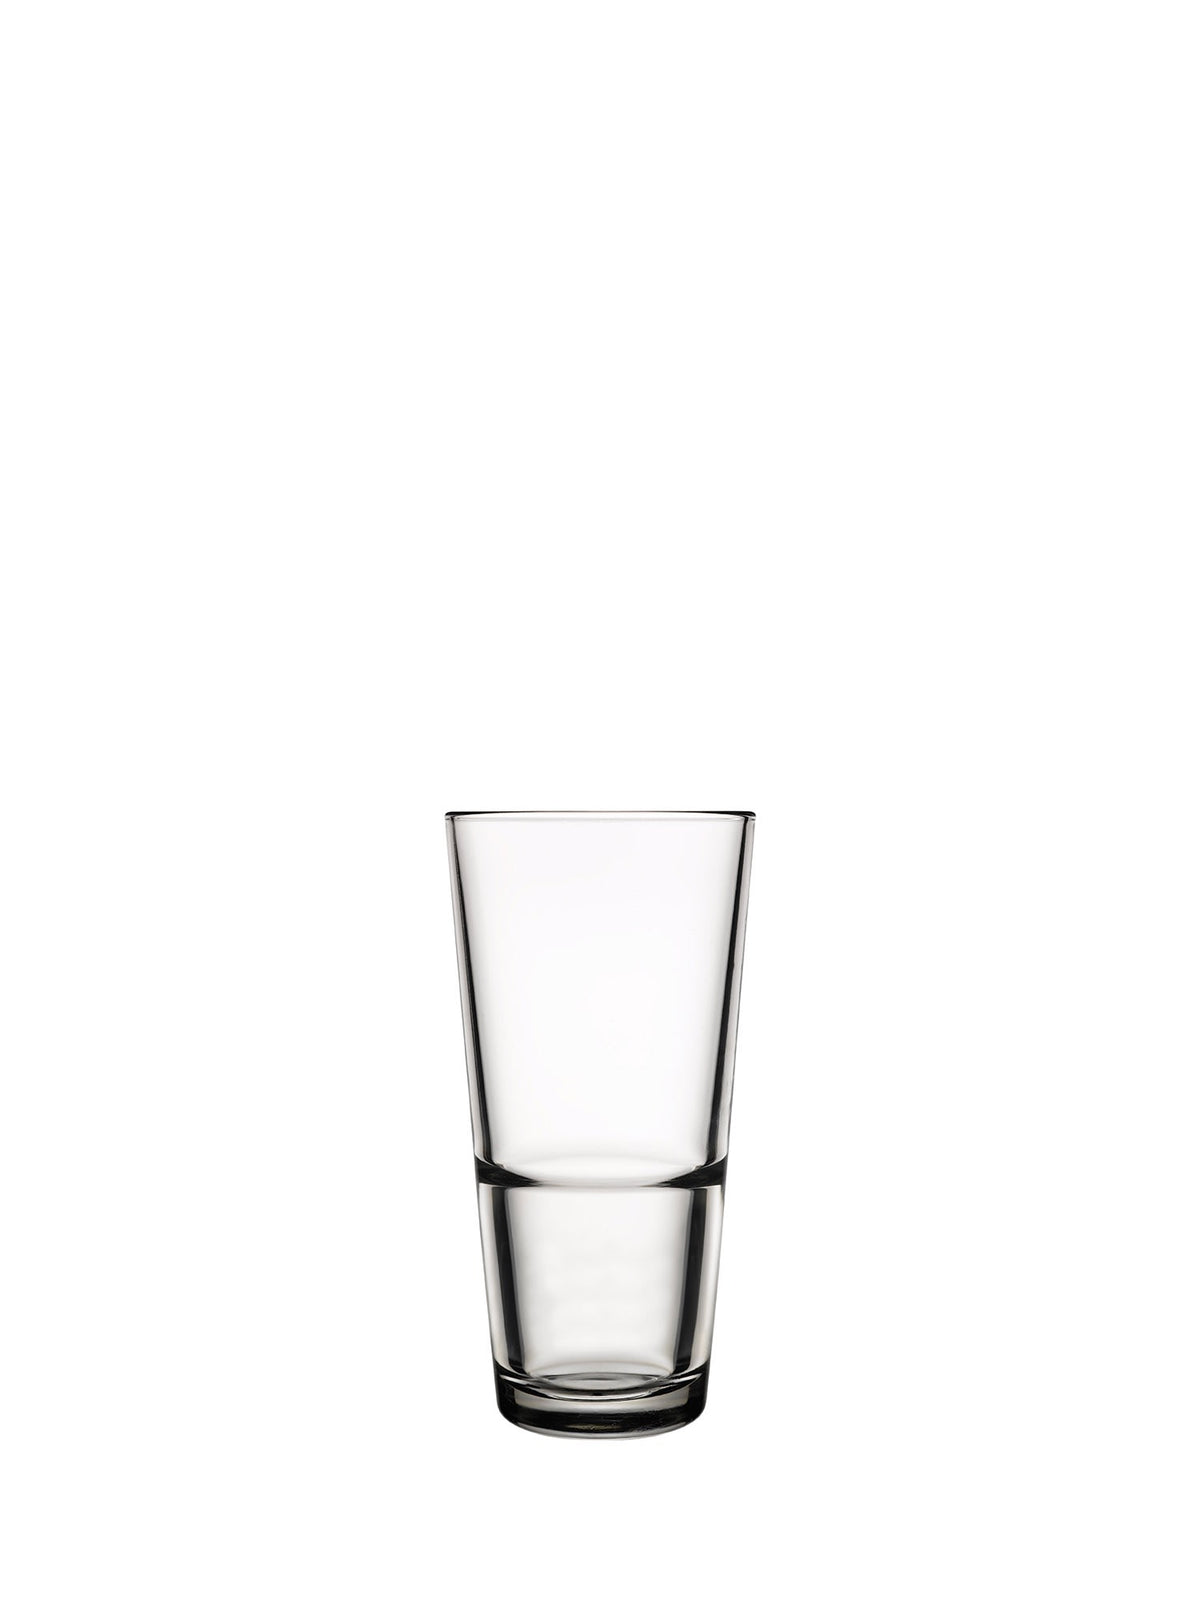 Grande S longdrinkglas - et elegant og stilfuldt glas perfekt til servering af læskende longdrinks.